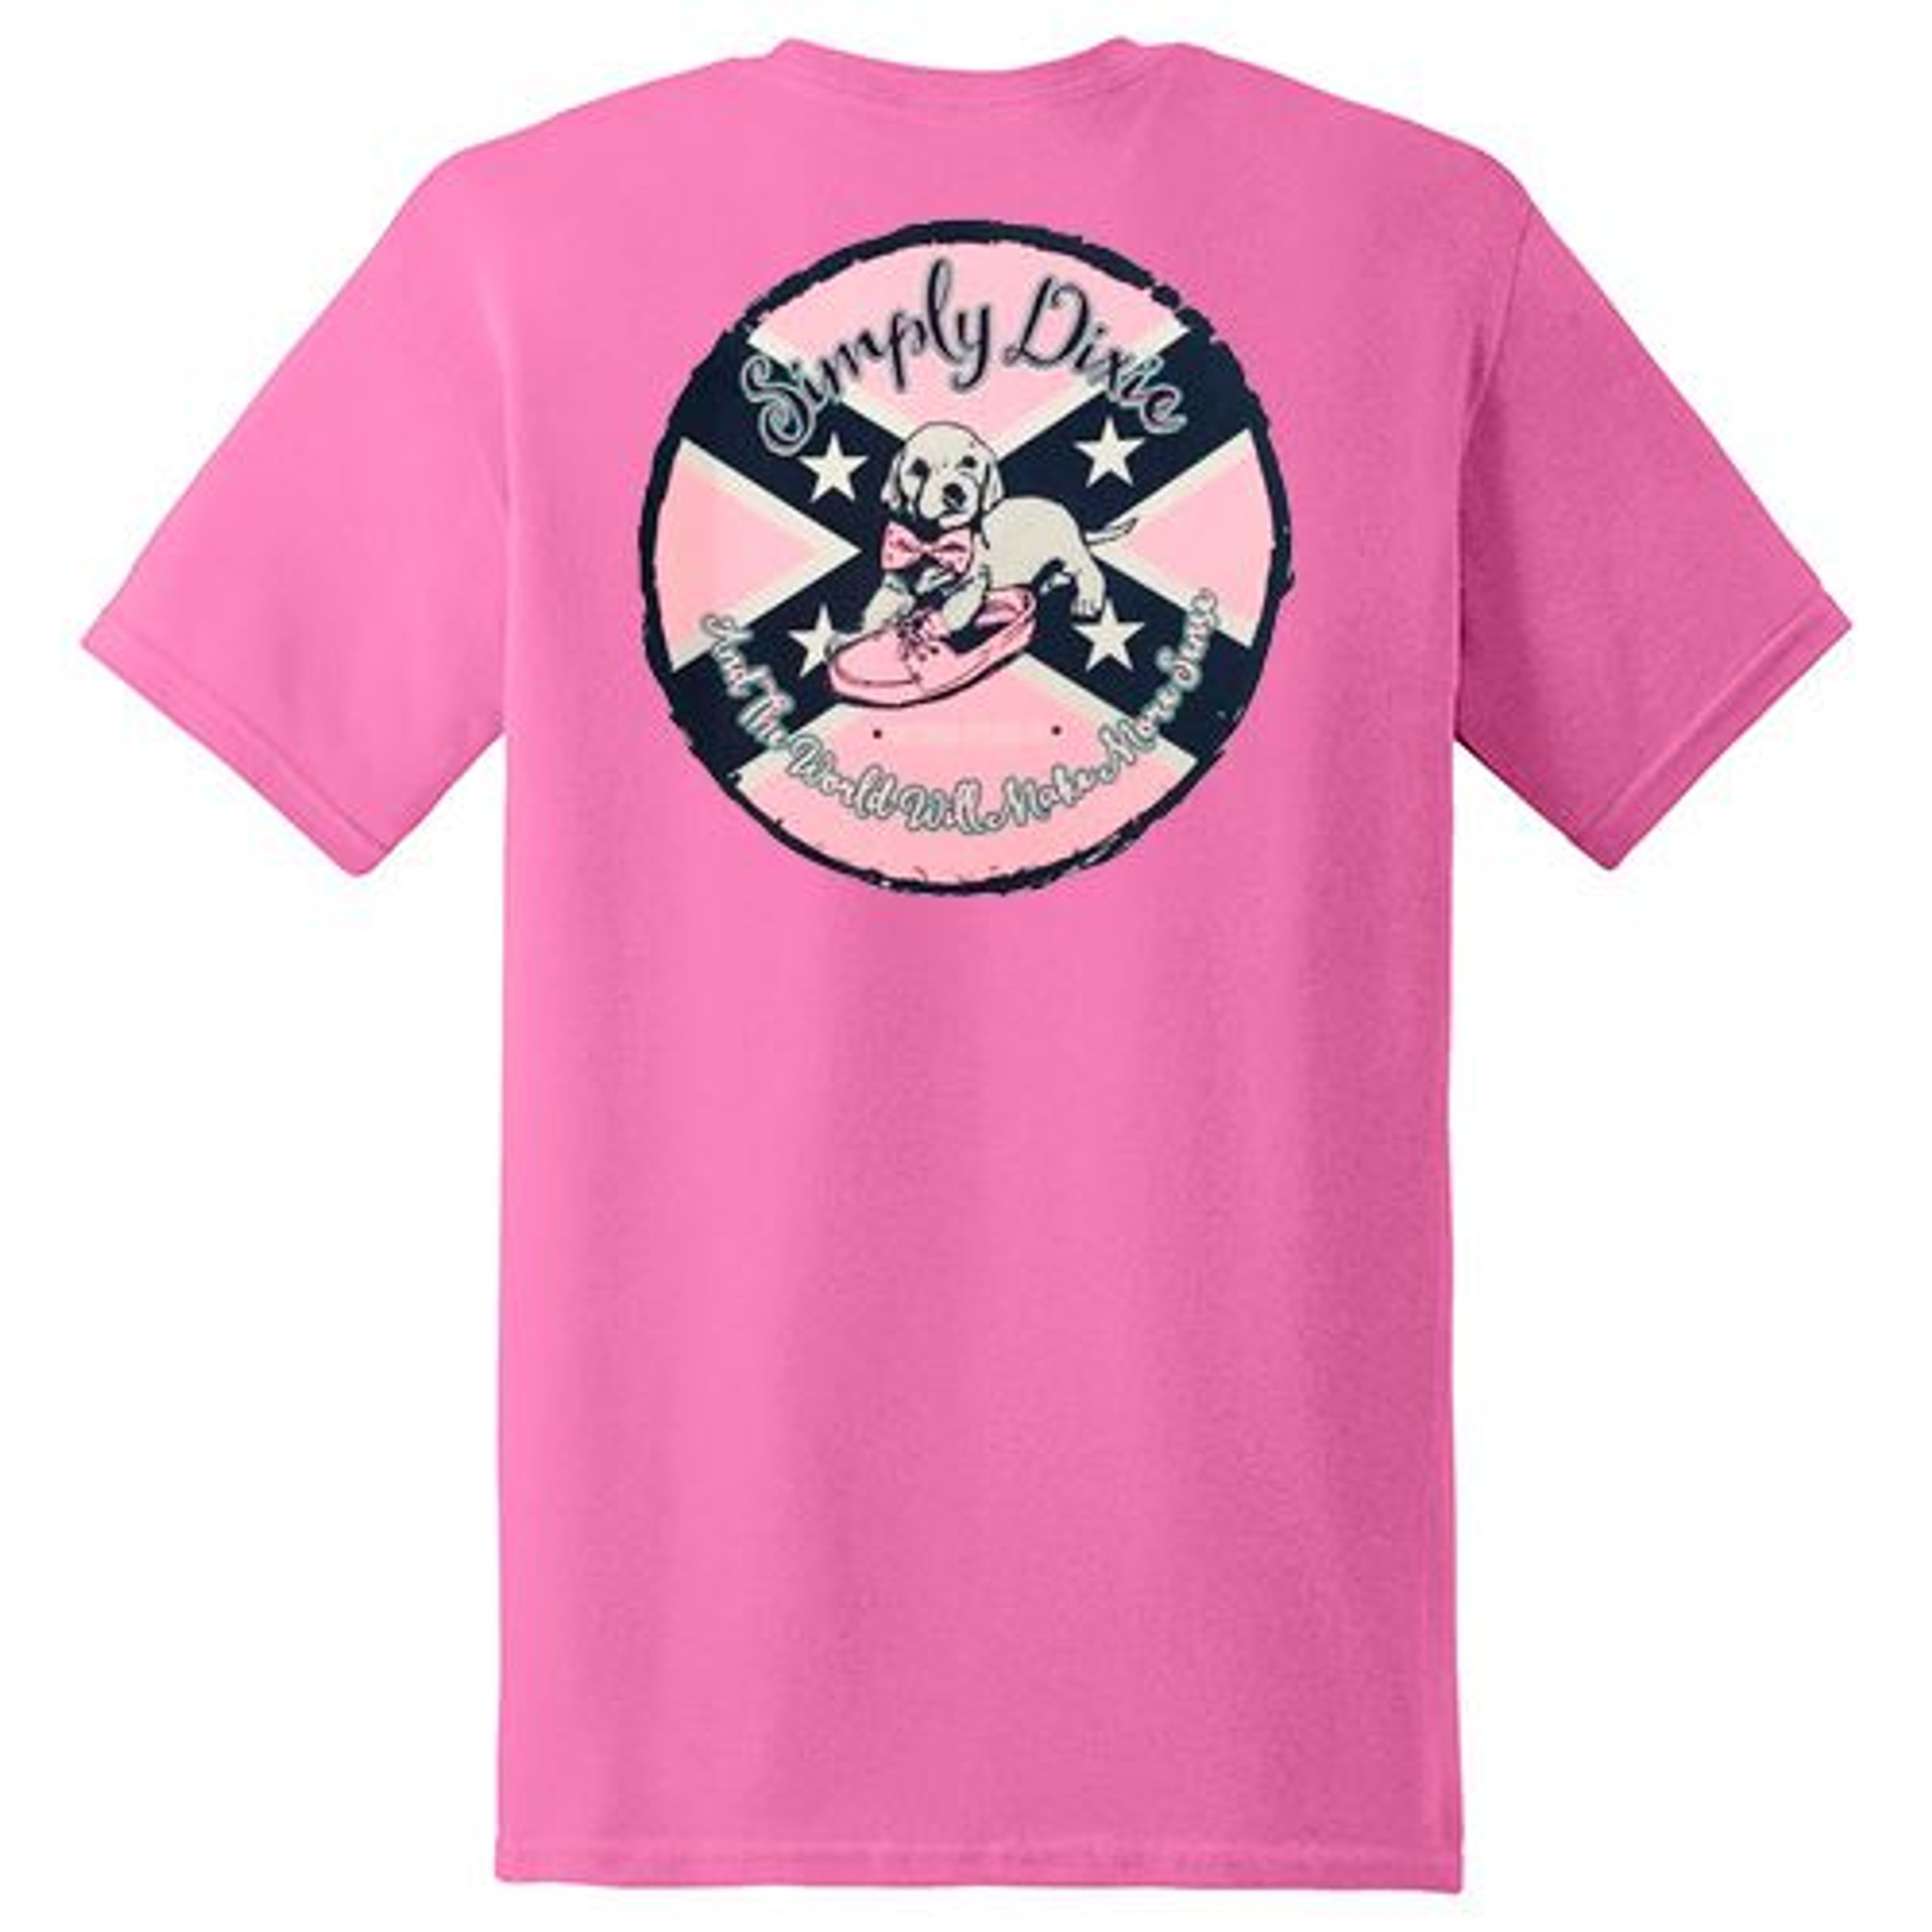 WOMEN'S - Ladies Shirt - Page 1 - The Dixie Shop